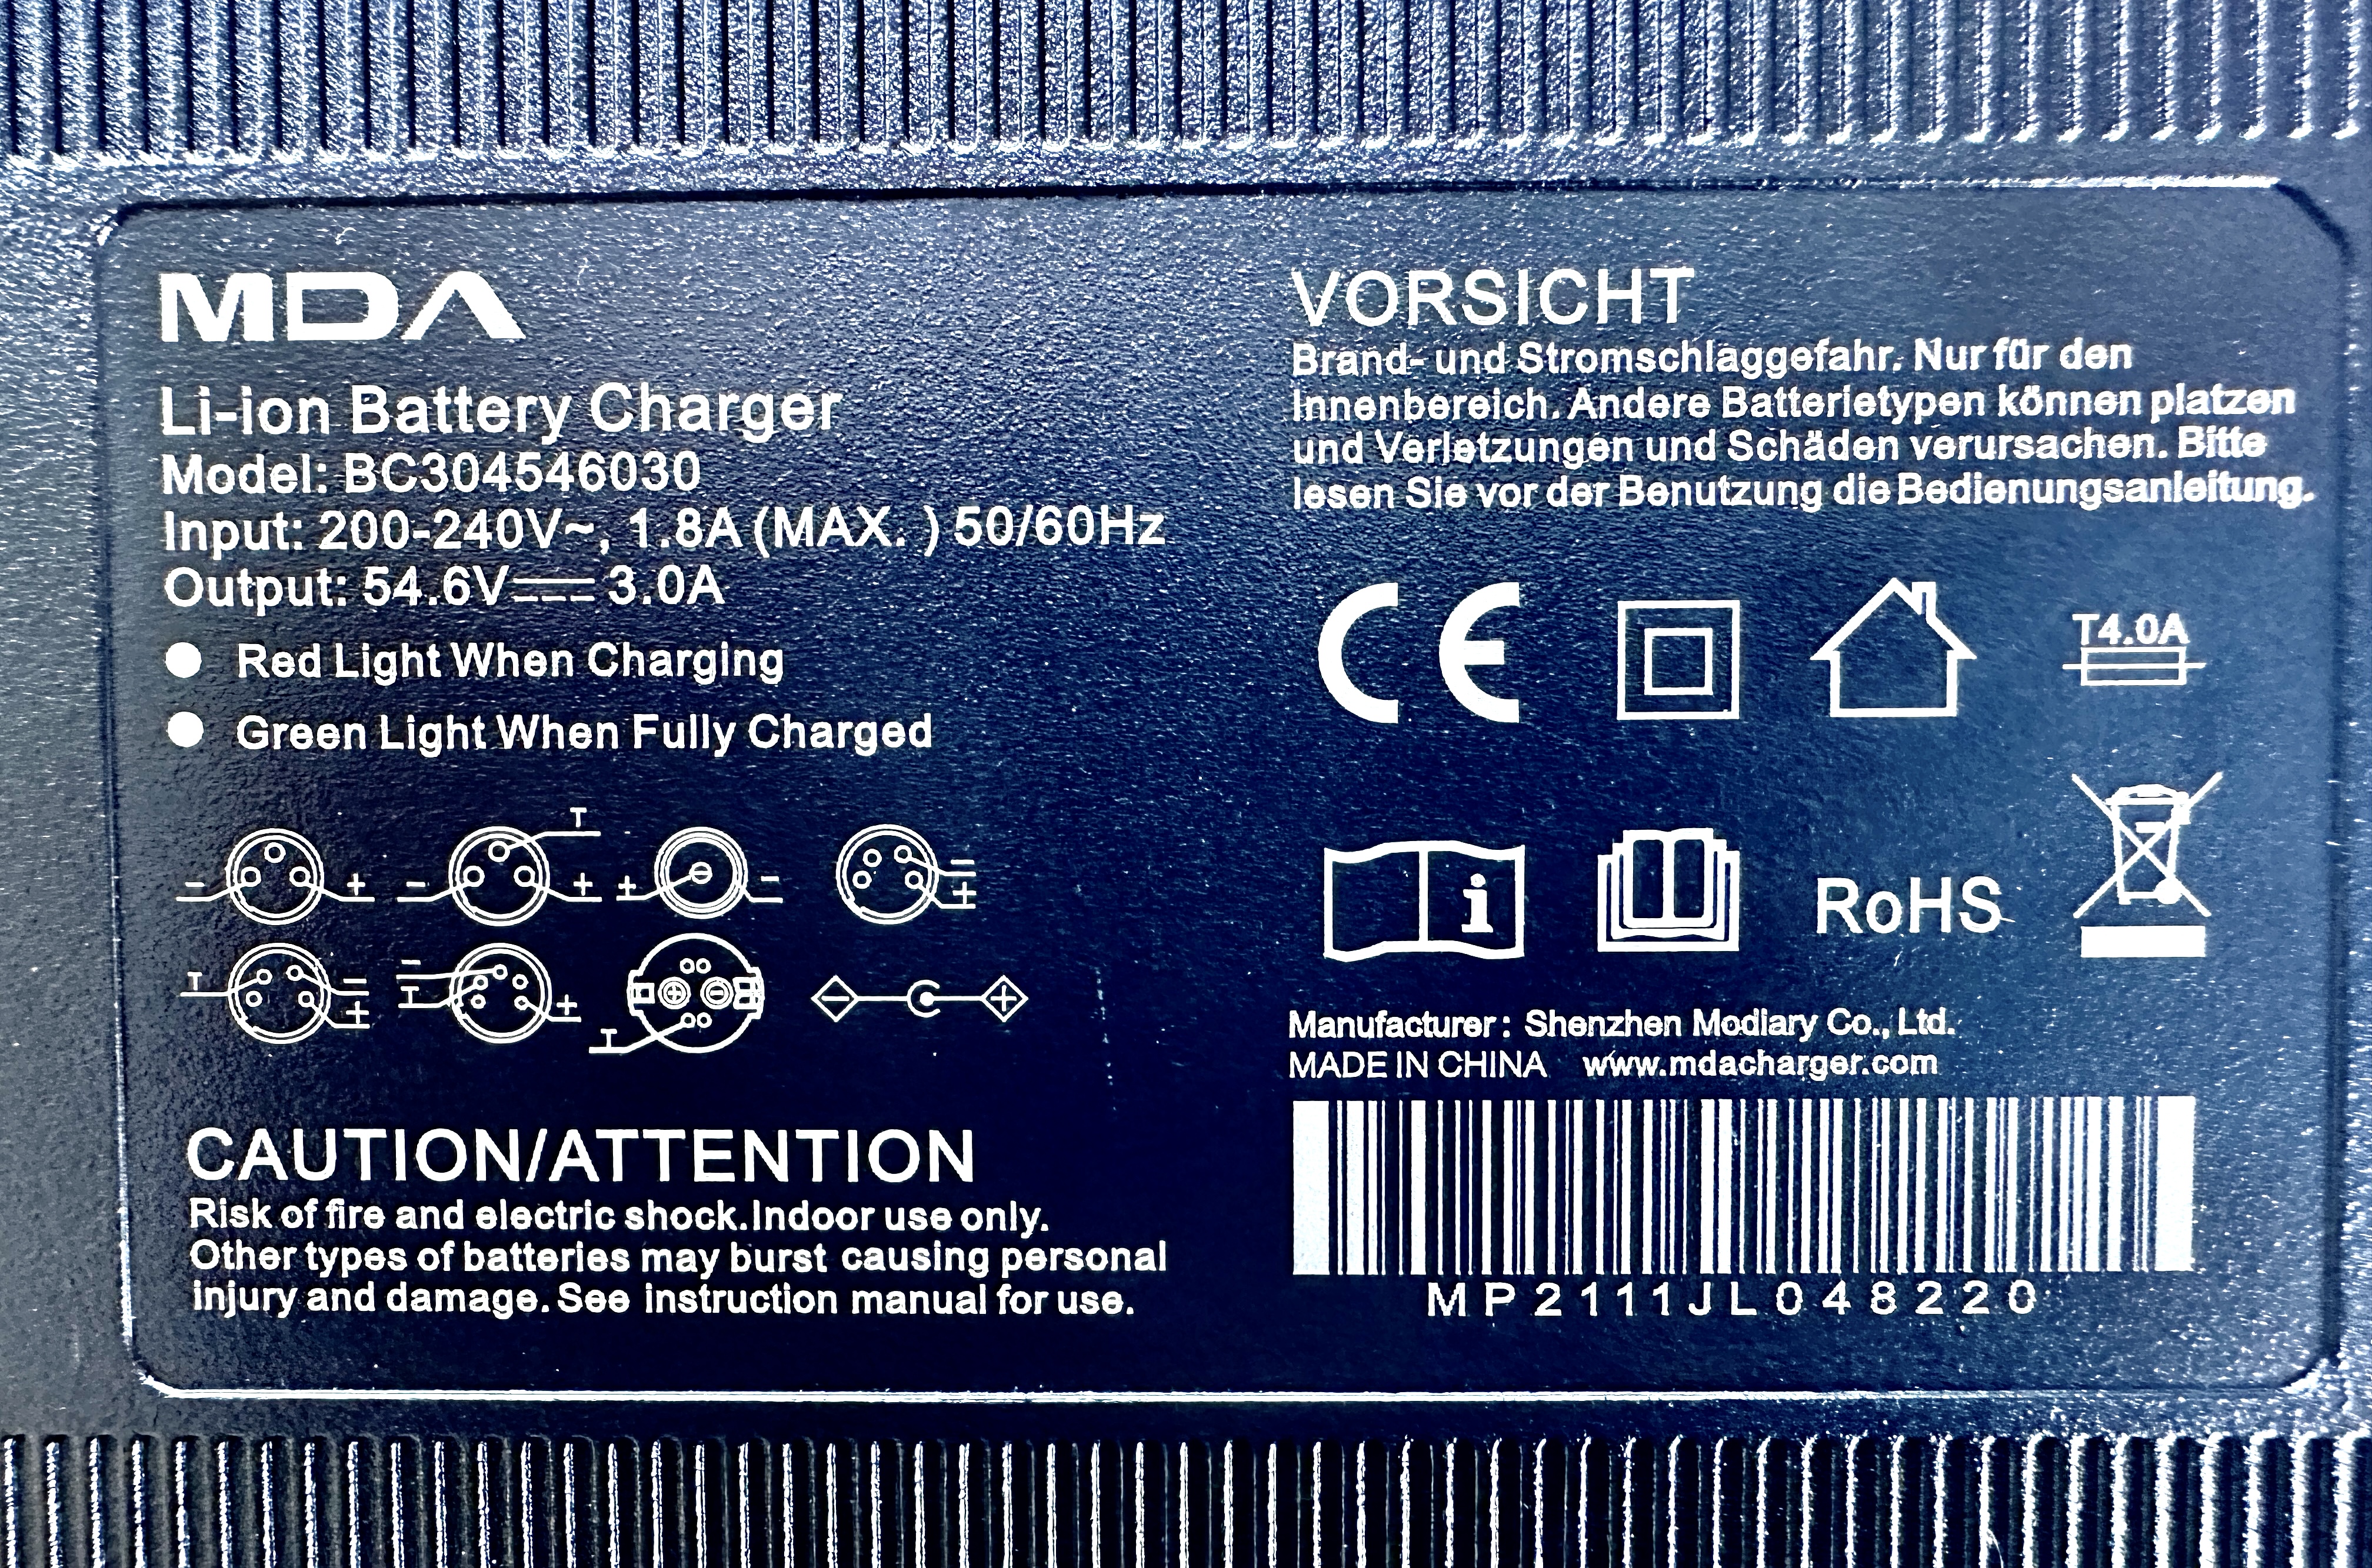 48V Charger for Li-ion battery DC Plug, 200 - 240V 1.8A